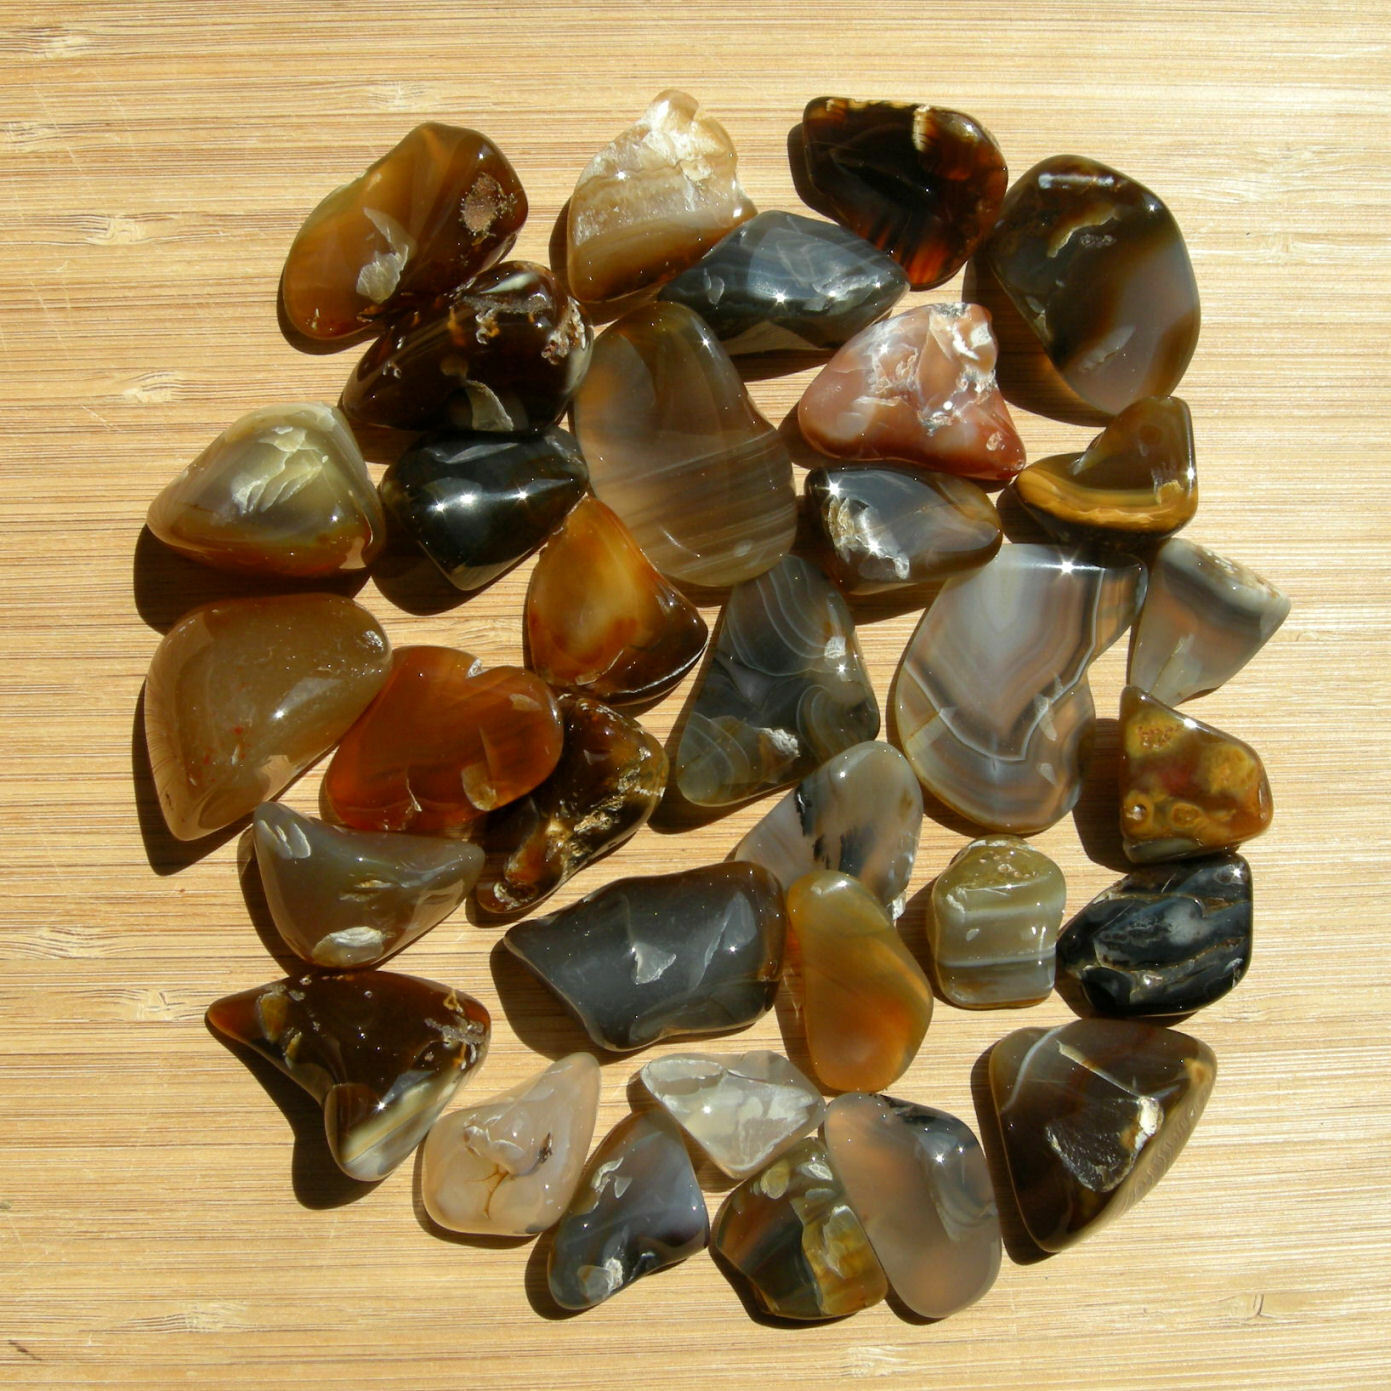 1LB Lot Agate Crystals Mixed Tumbling Seconds Natural Color Stones Rough Spots